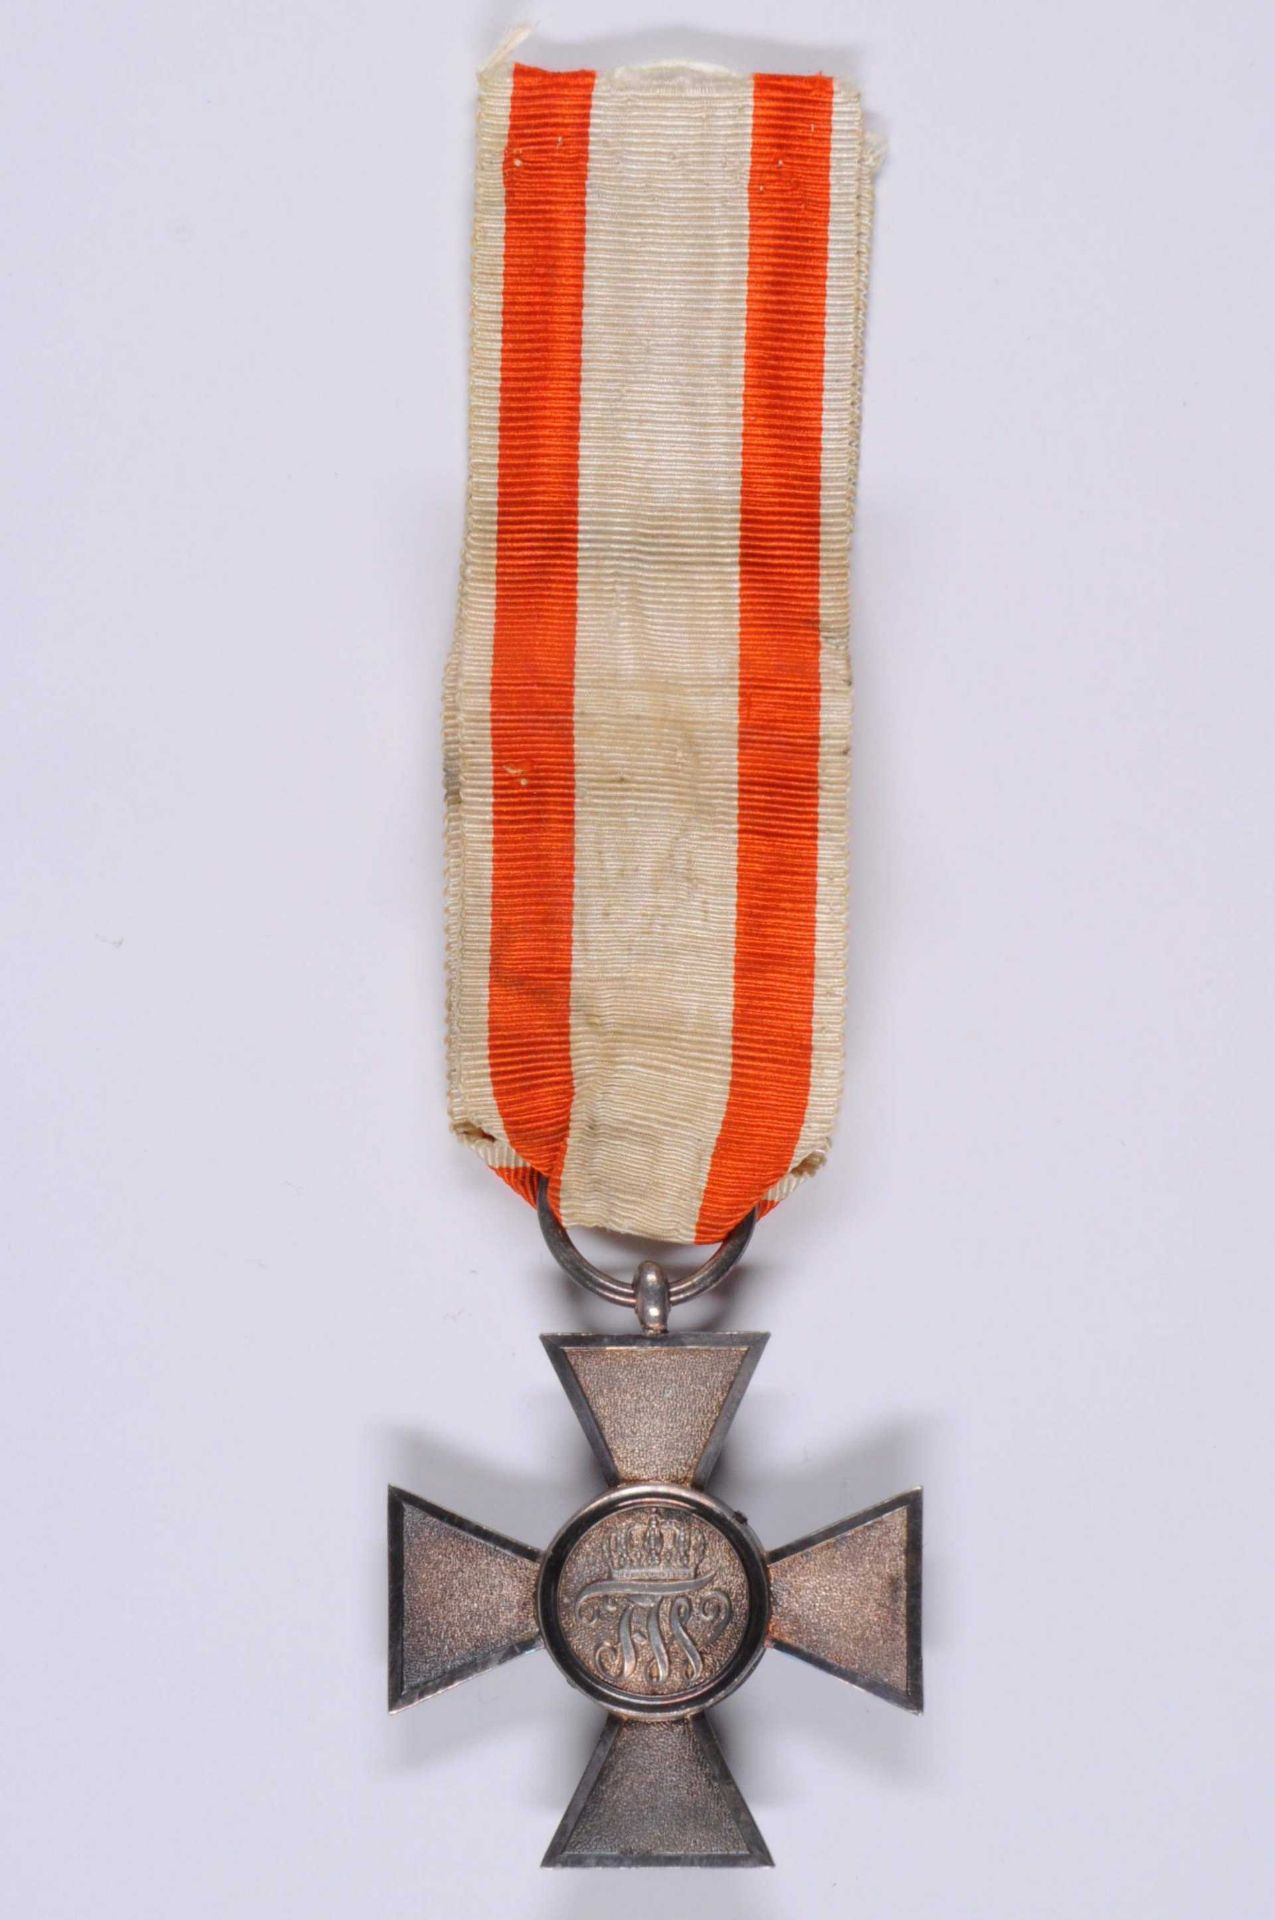 Preußen, Roter Adler Orden, Kreuz 4. Klasse, Silber, gekörnte Arme, am Band, OEK 1704, dazu Verleihu - Bild 3 aus 3